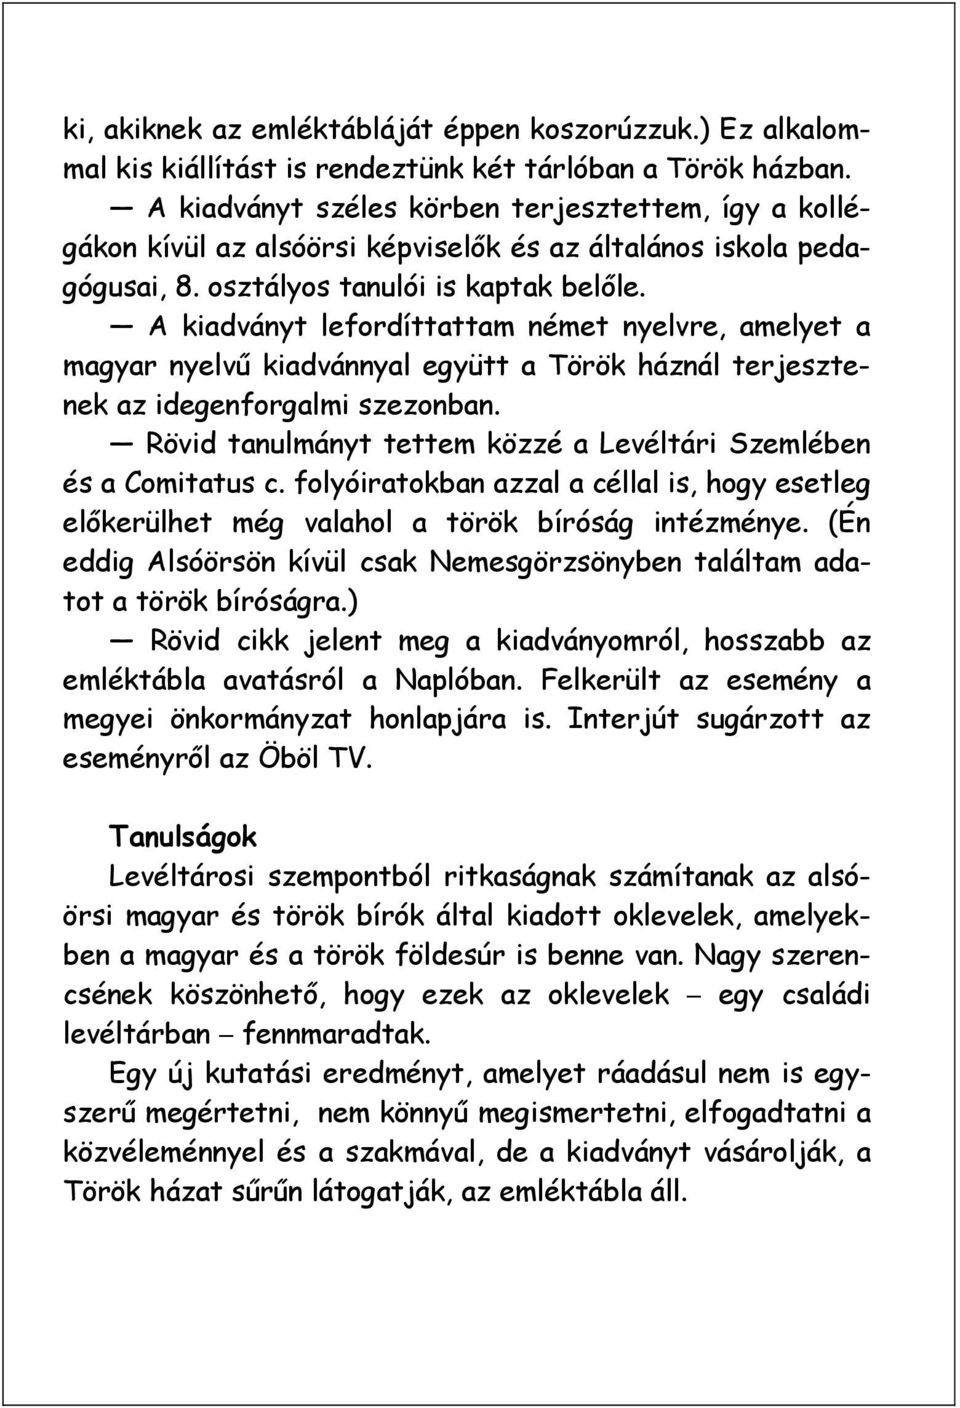 A kiadványt lefordíttattam német nyelvre, amelyet a magyar nyelvű kiadvánnyal együtt a Török háznál terjesztenek az idegenforgalmi szezonban.